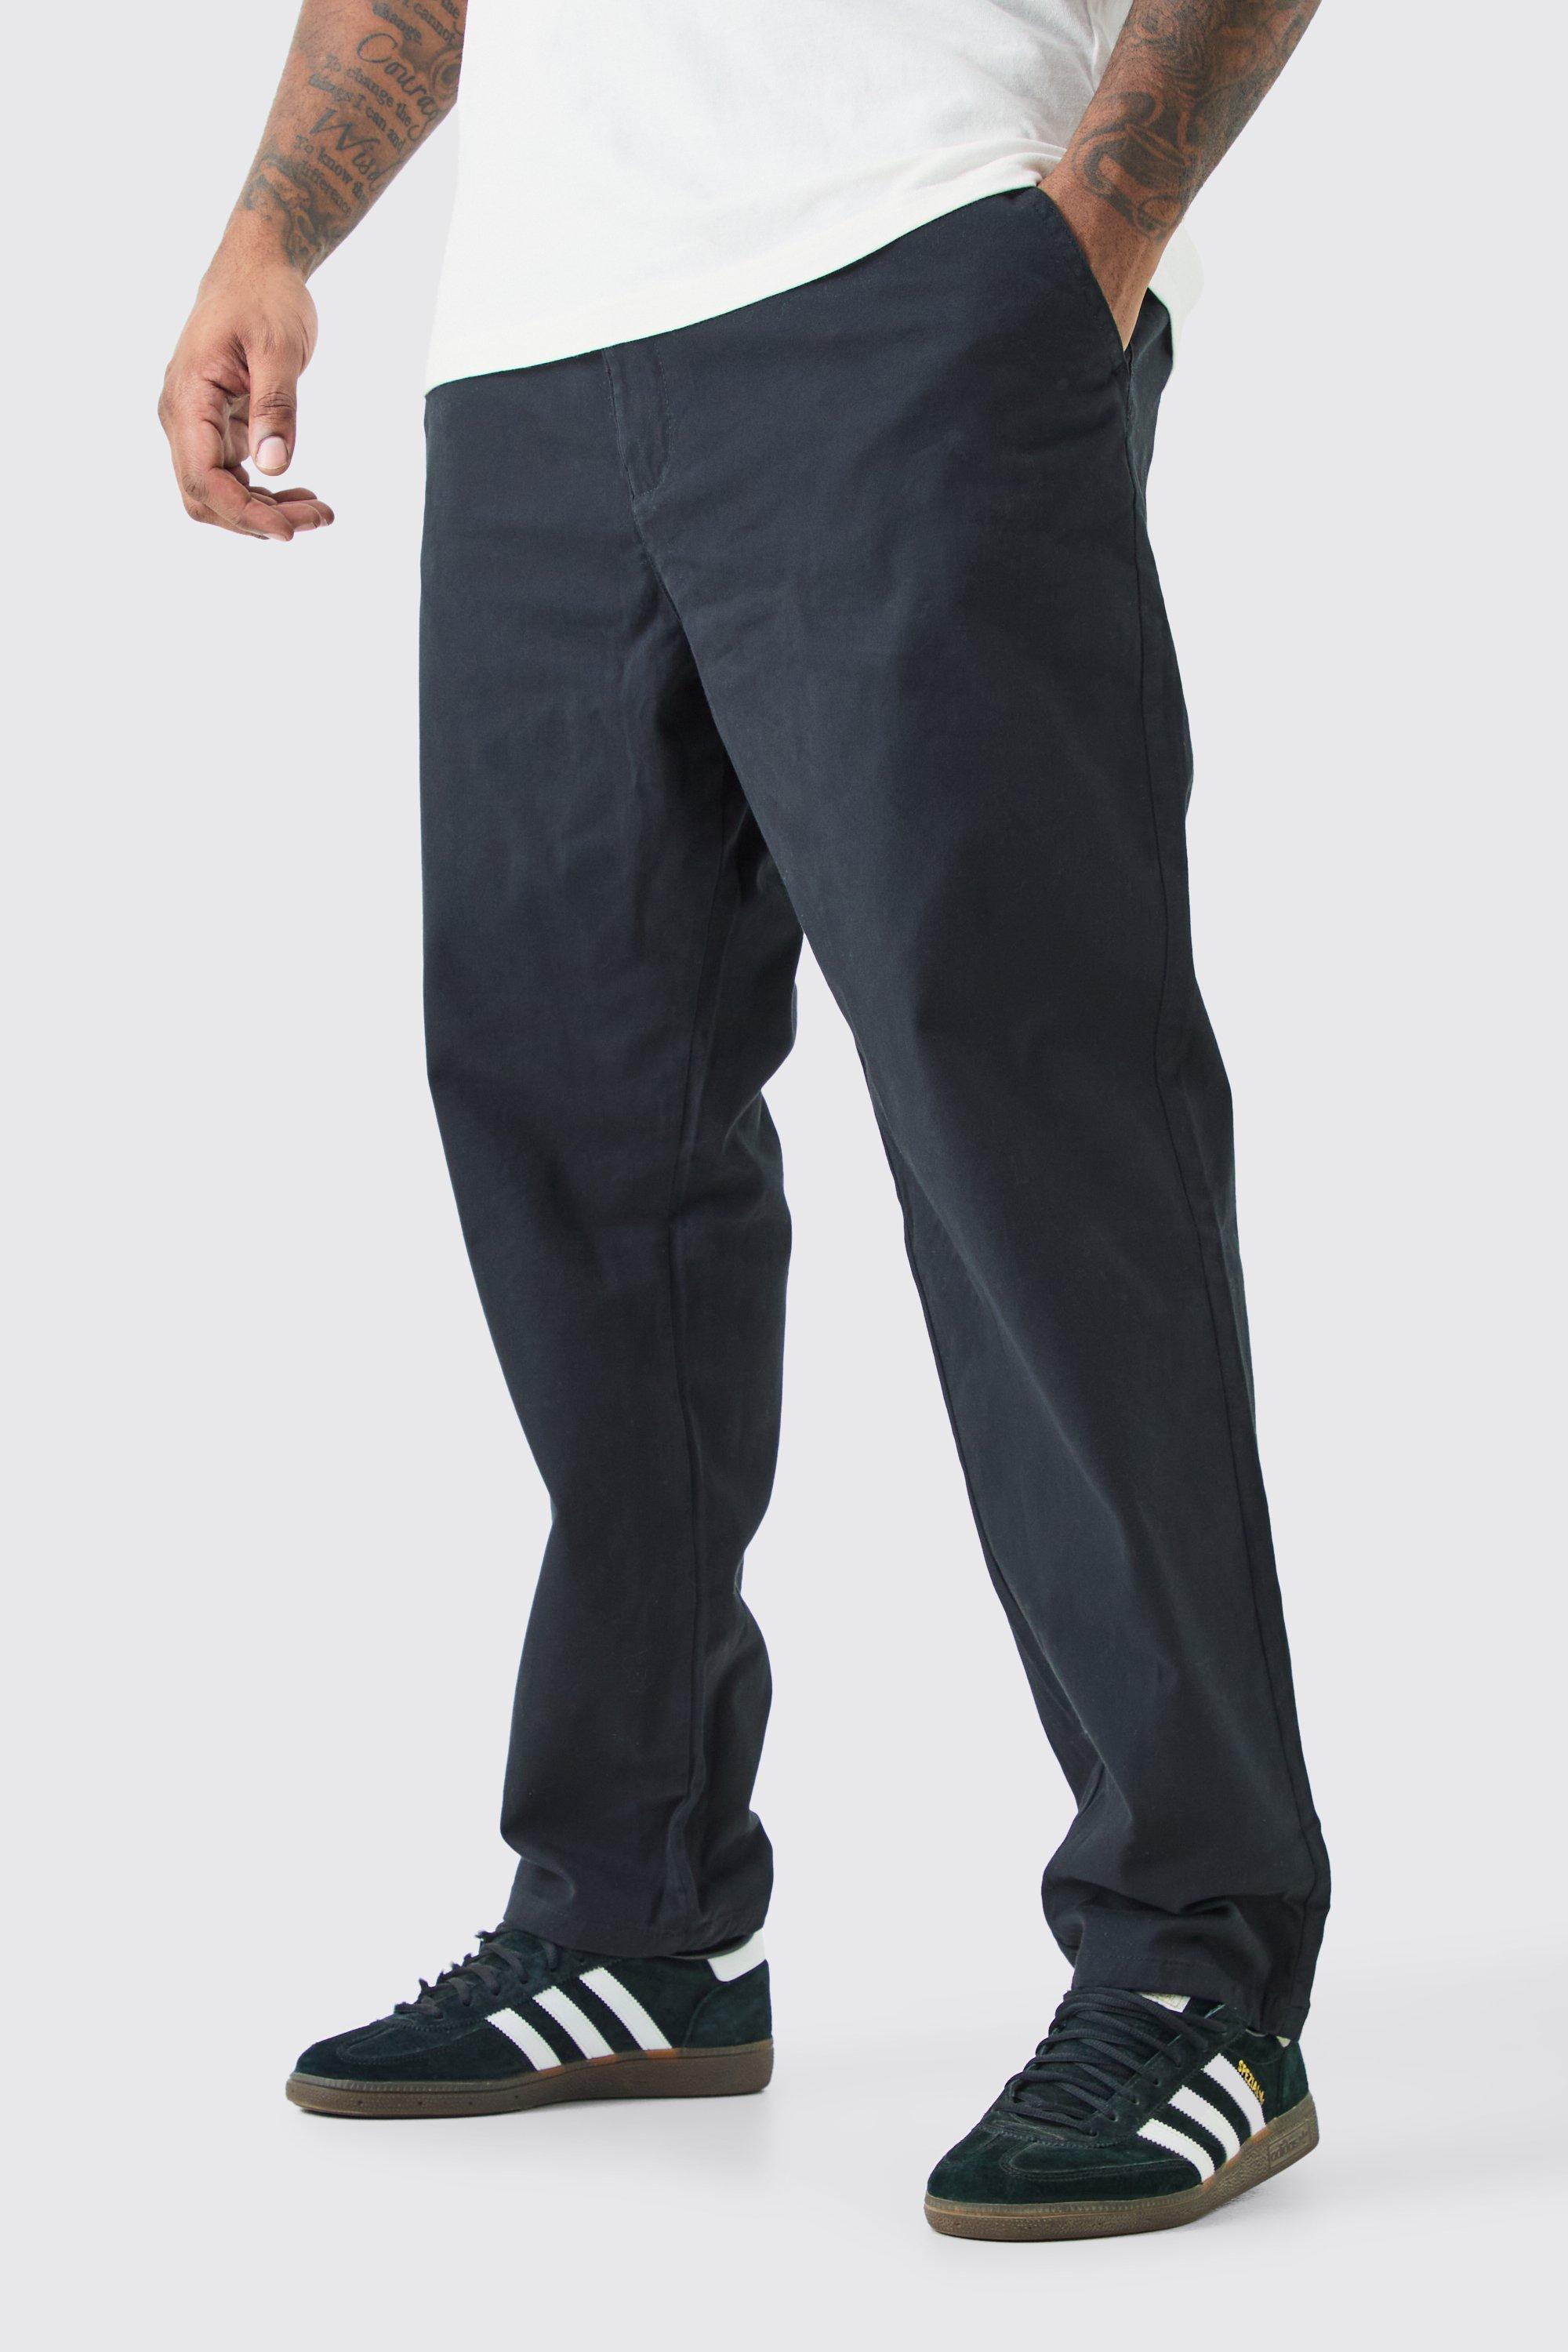 grande taille - pantalon chino slim à talle fixe homme - noir - 44, noir